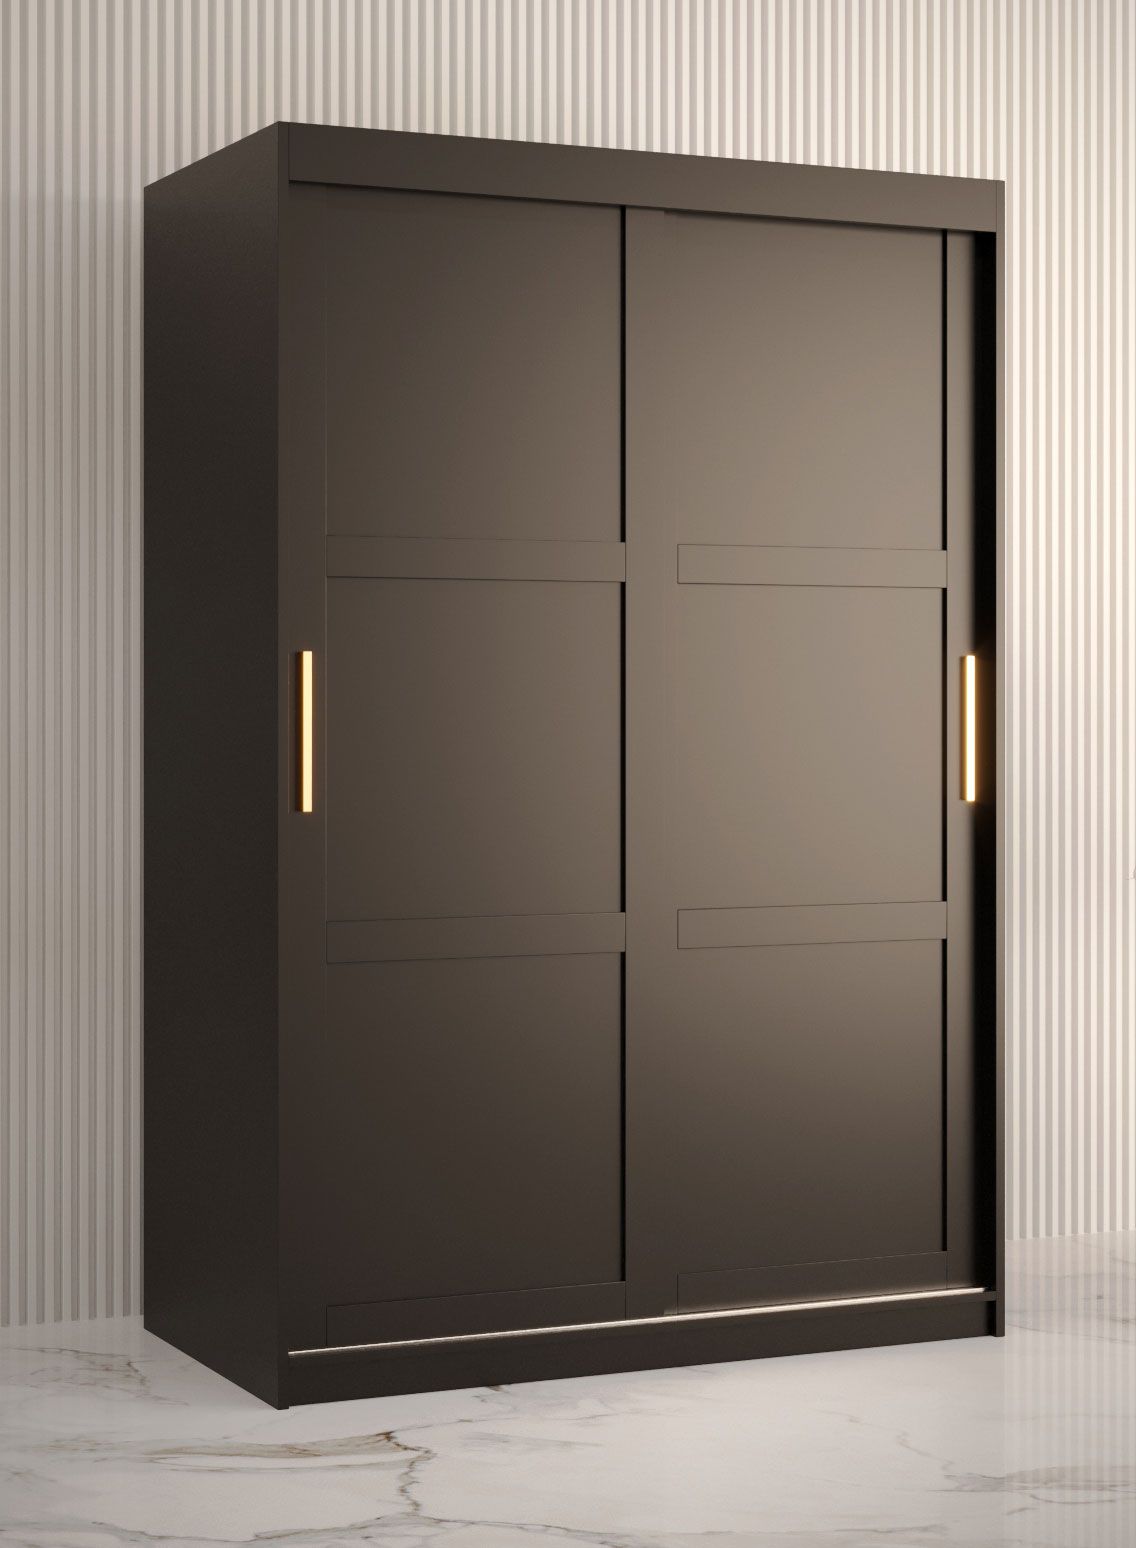 Kledingkast met eenvoudige vorm Liskamm 08, kleur: mat zwart - afmetingen: 200 x 120 x 62 cm (H x B x D), met twee deuren